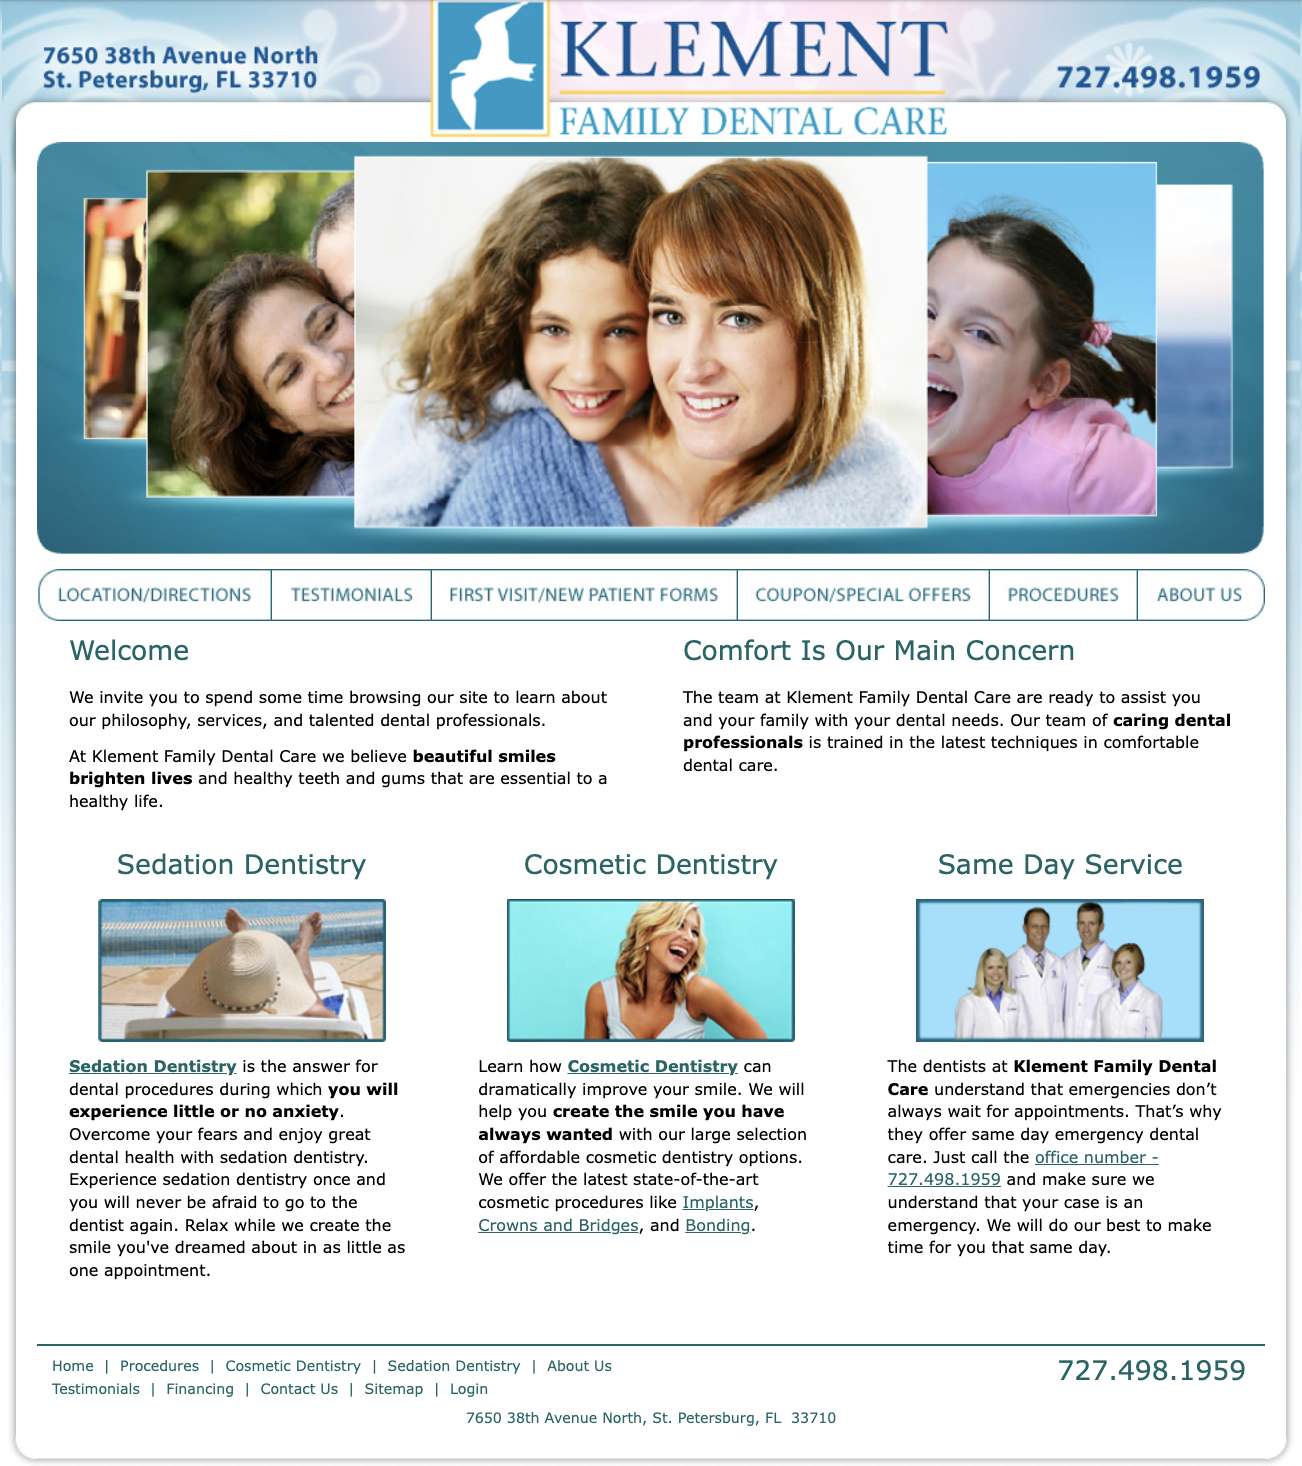 الصفحة الرئيسية السابقة لعائلة كليمنت لطب الأسنان